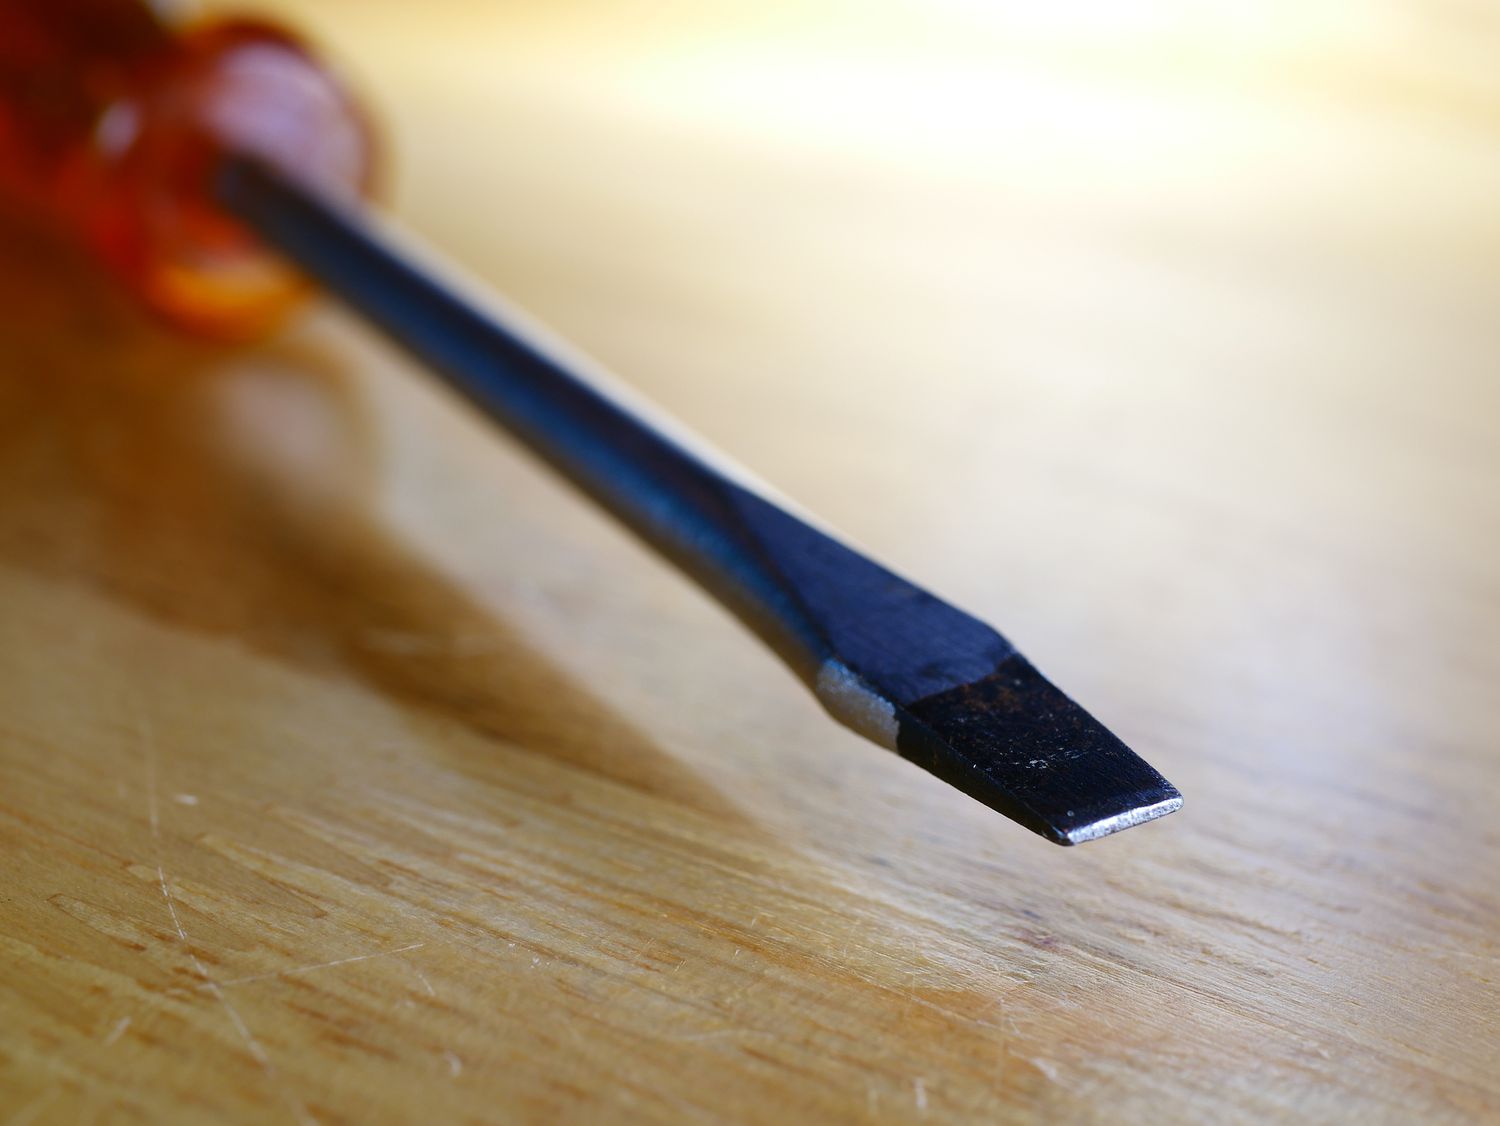 A flathead screwdriver